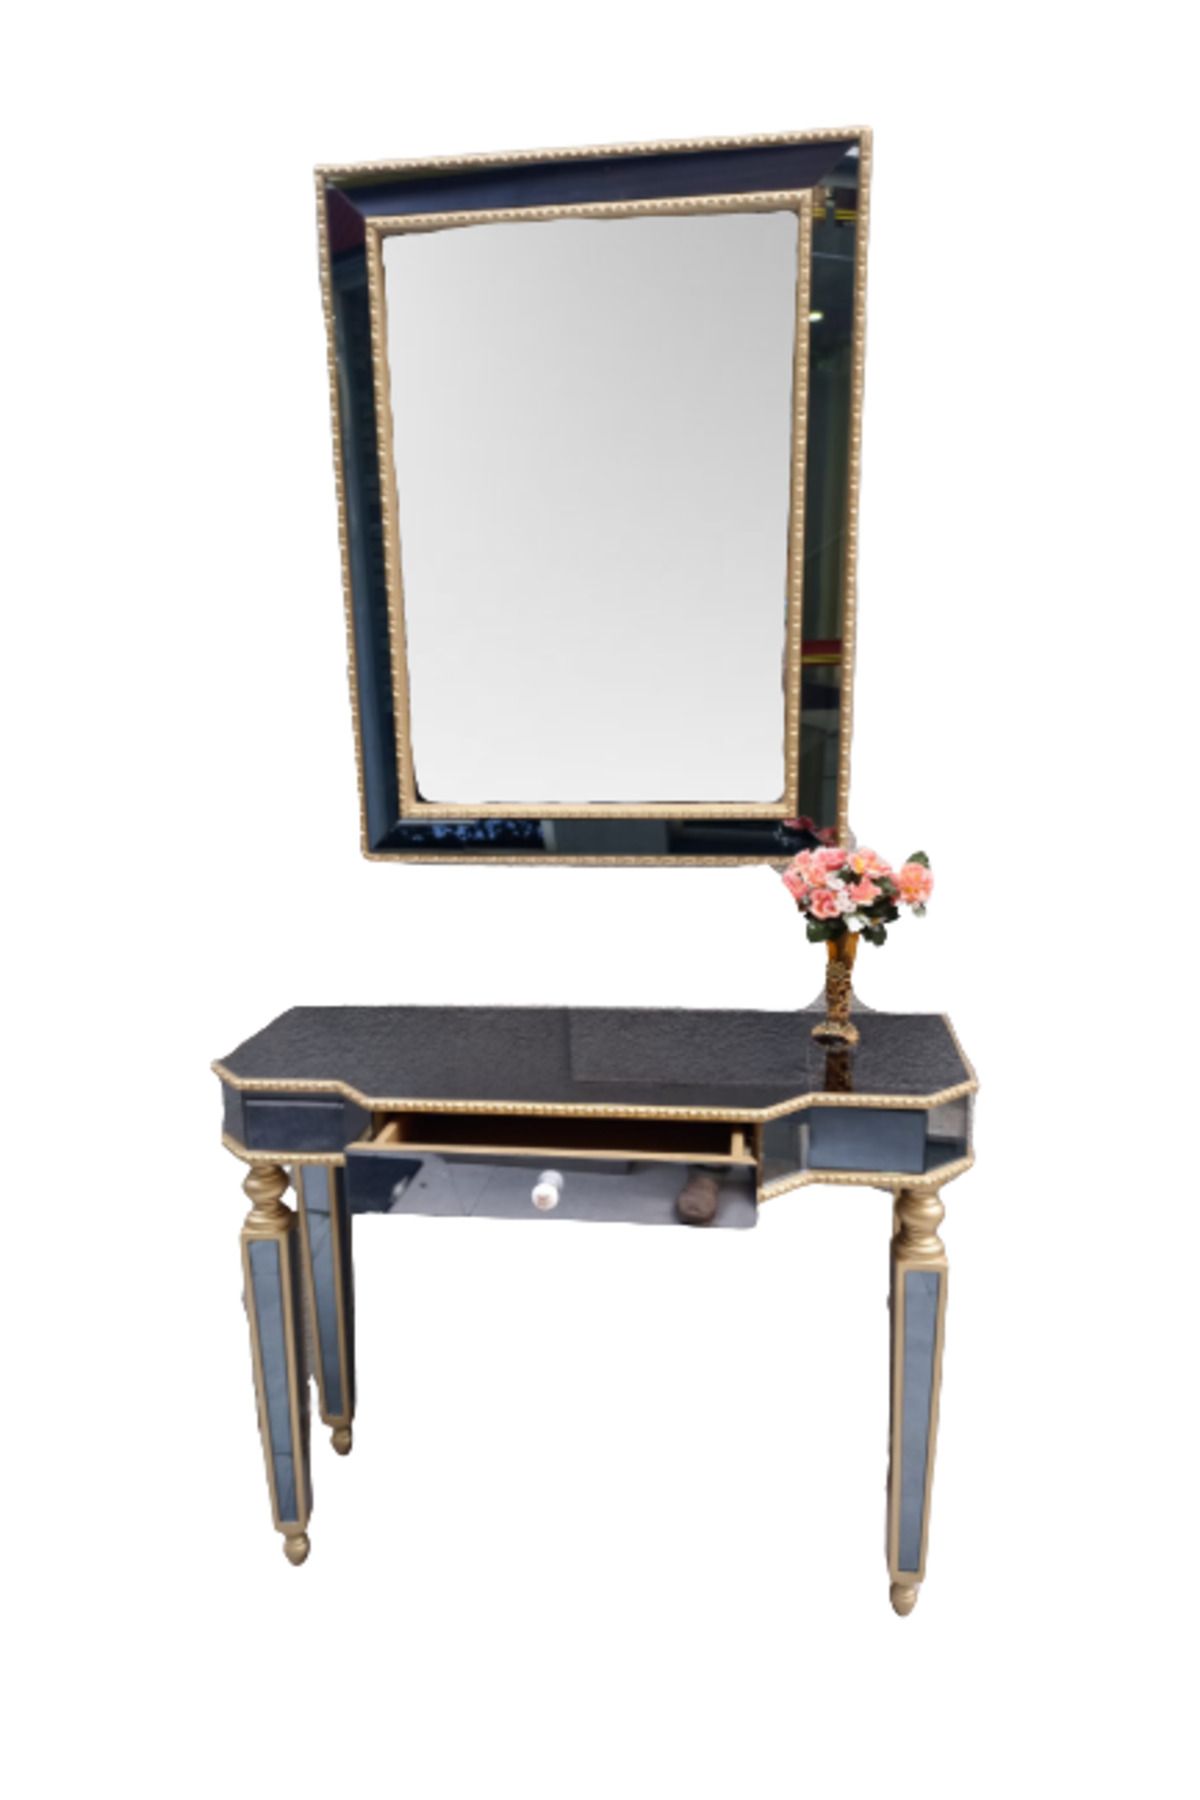 BENGİ TİCARET Dresuar St Hayal Çekmece Geniş Tabla Gold Cam Ayna Kaplama Ayak Nakış Ayna Elyapı